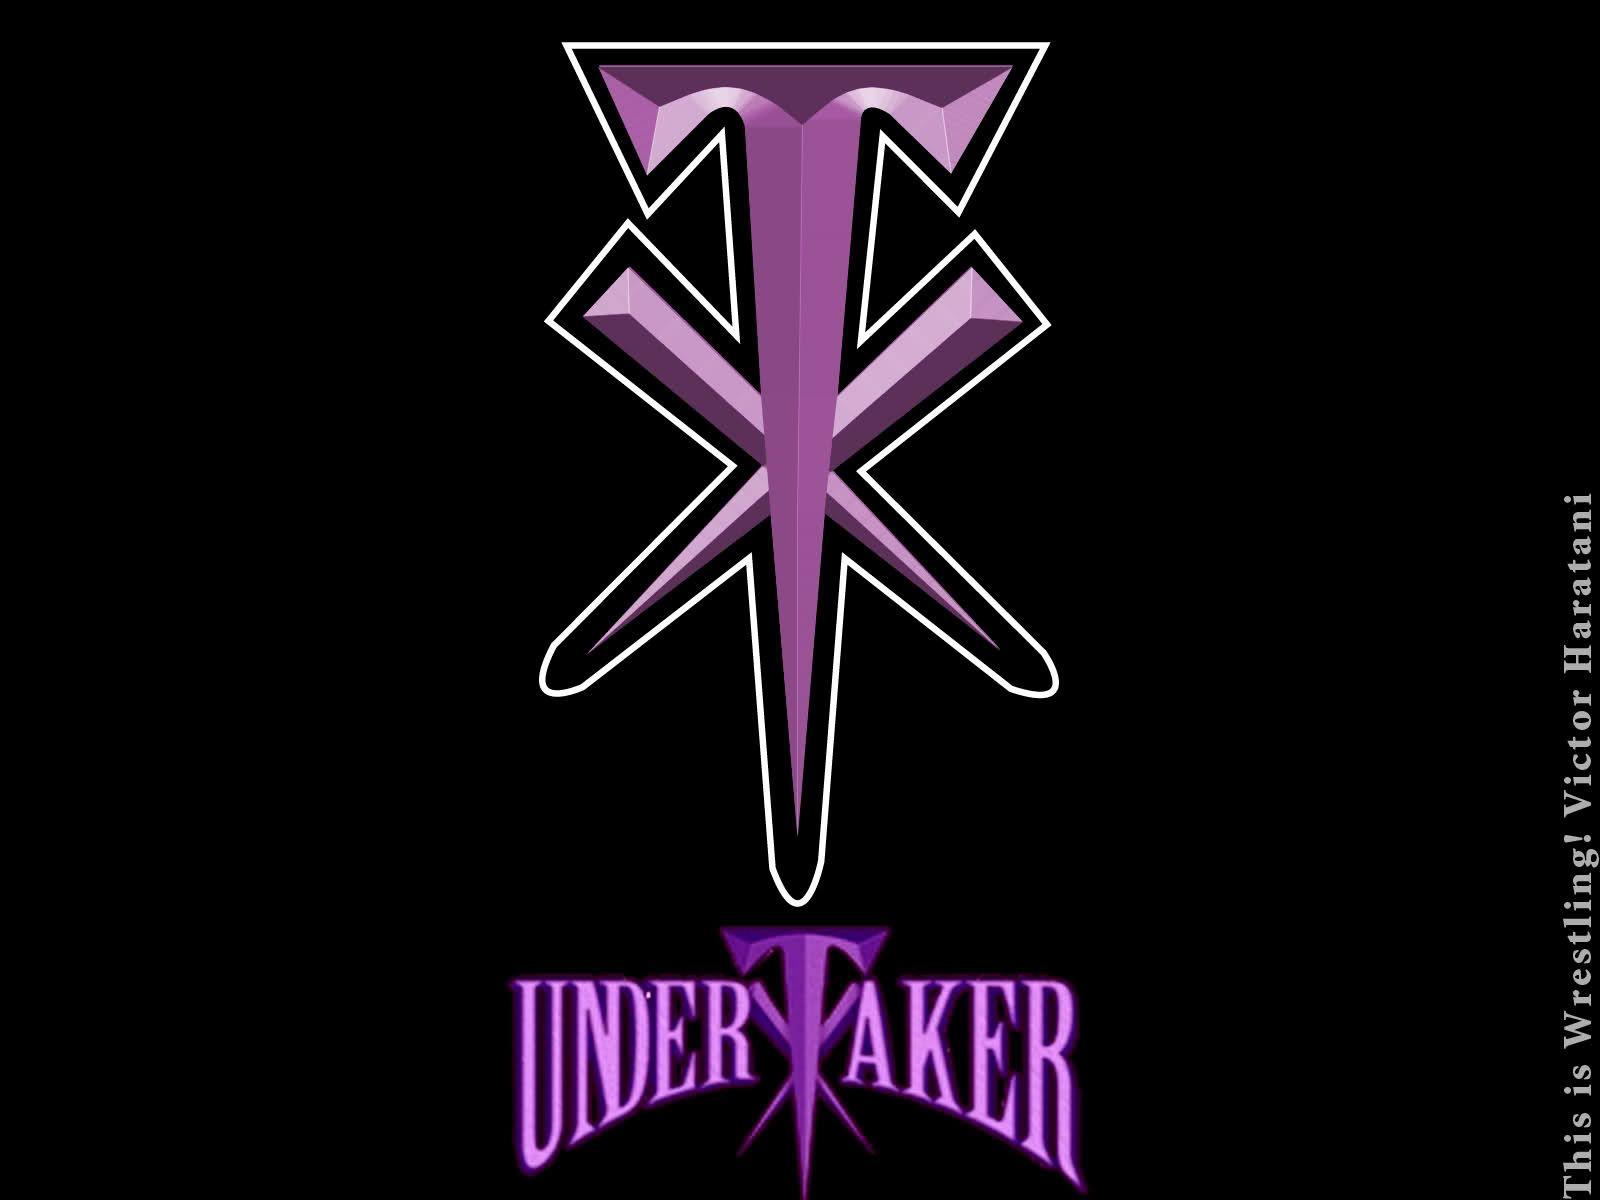 WWE Undertaker Logo Wallpapers.